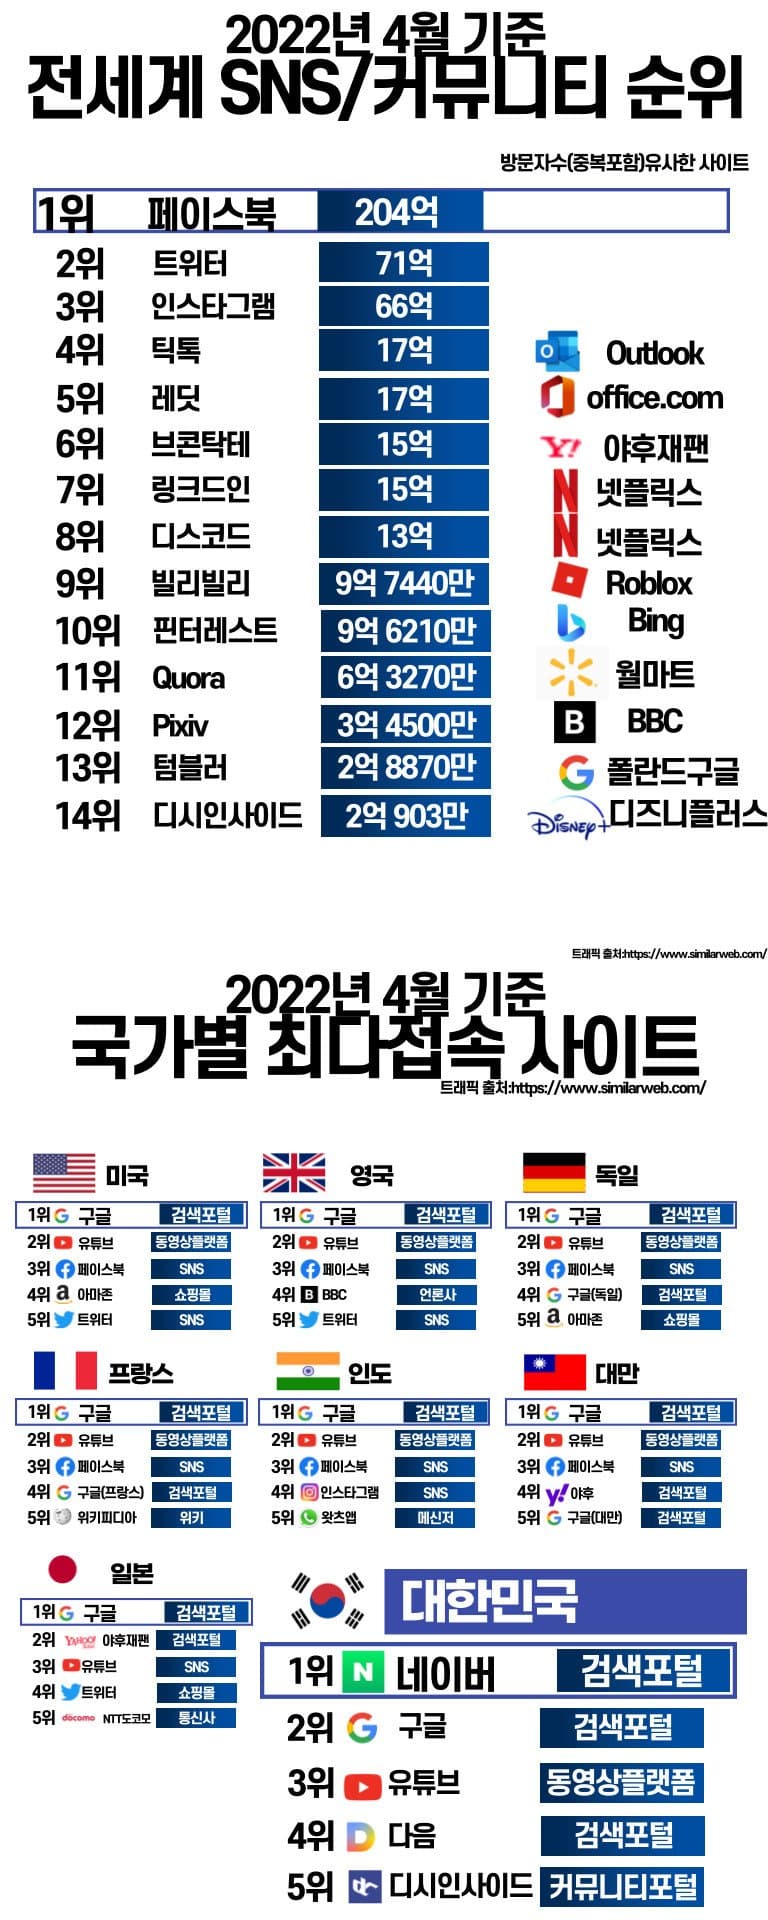 2022년 국가별 최다 접속 사이트 top5